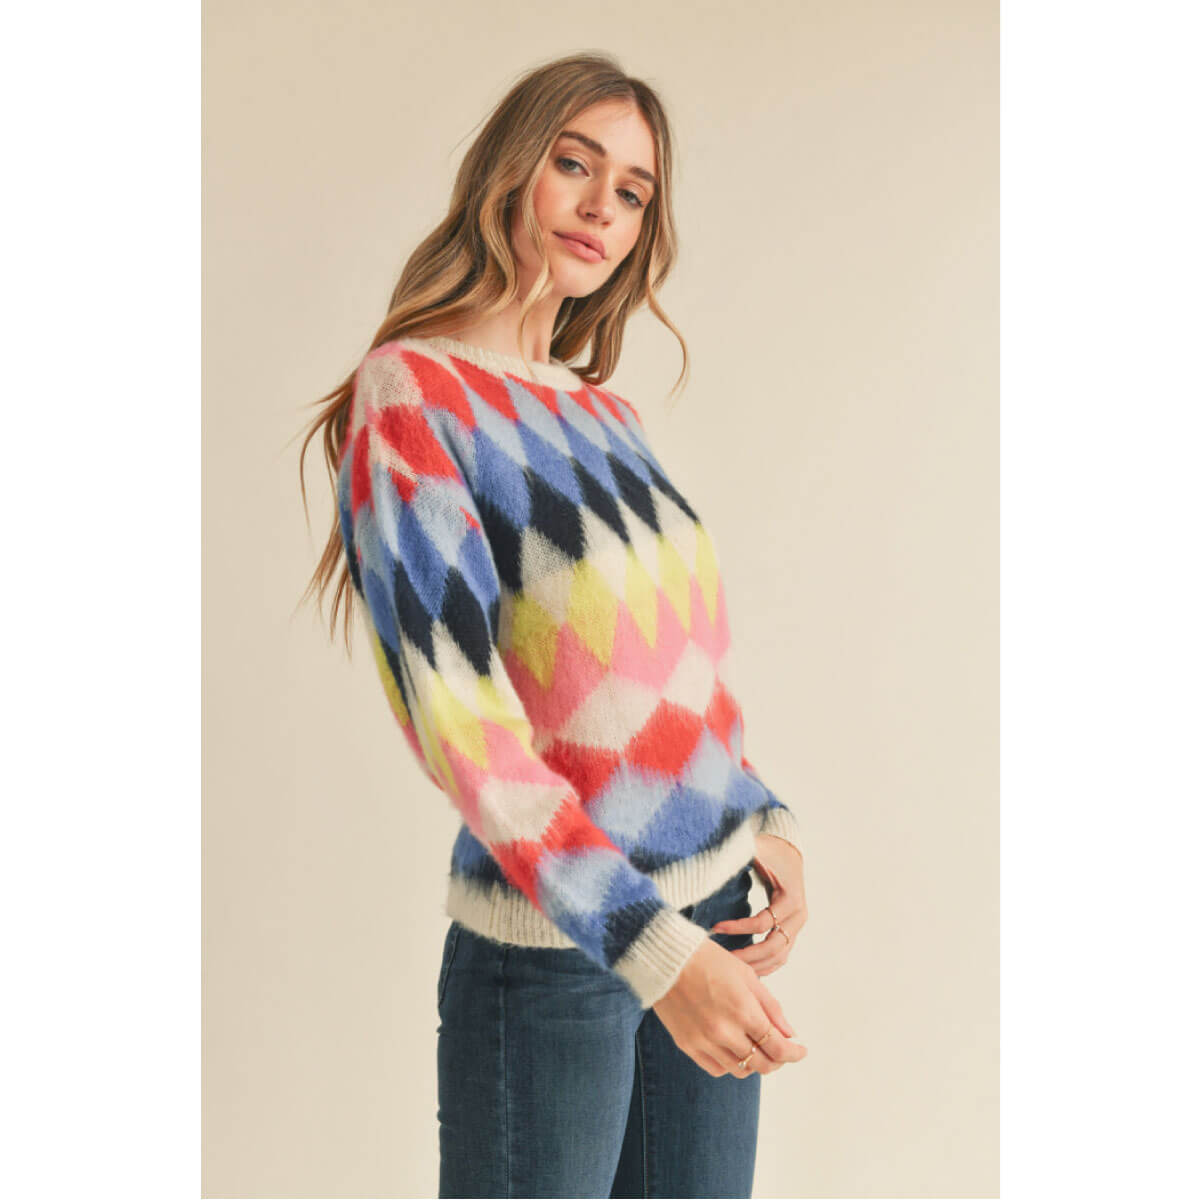 Fuzzy Diamond Knit Sweater blue side| MILK MONEY milkmoney.co | cute sweaters for women, cute knit sweaters, cute pullover sweaters